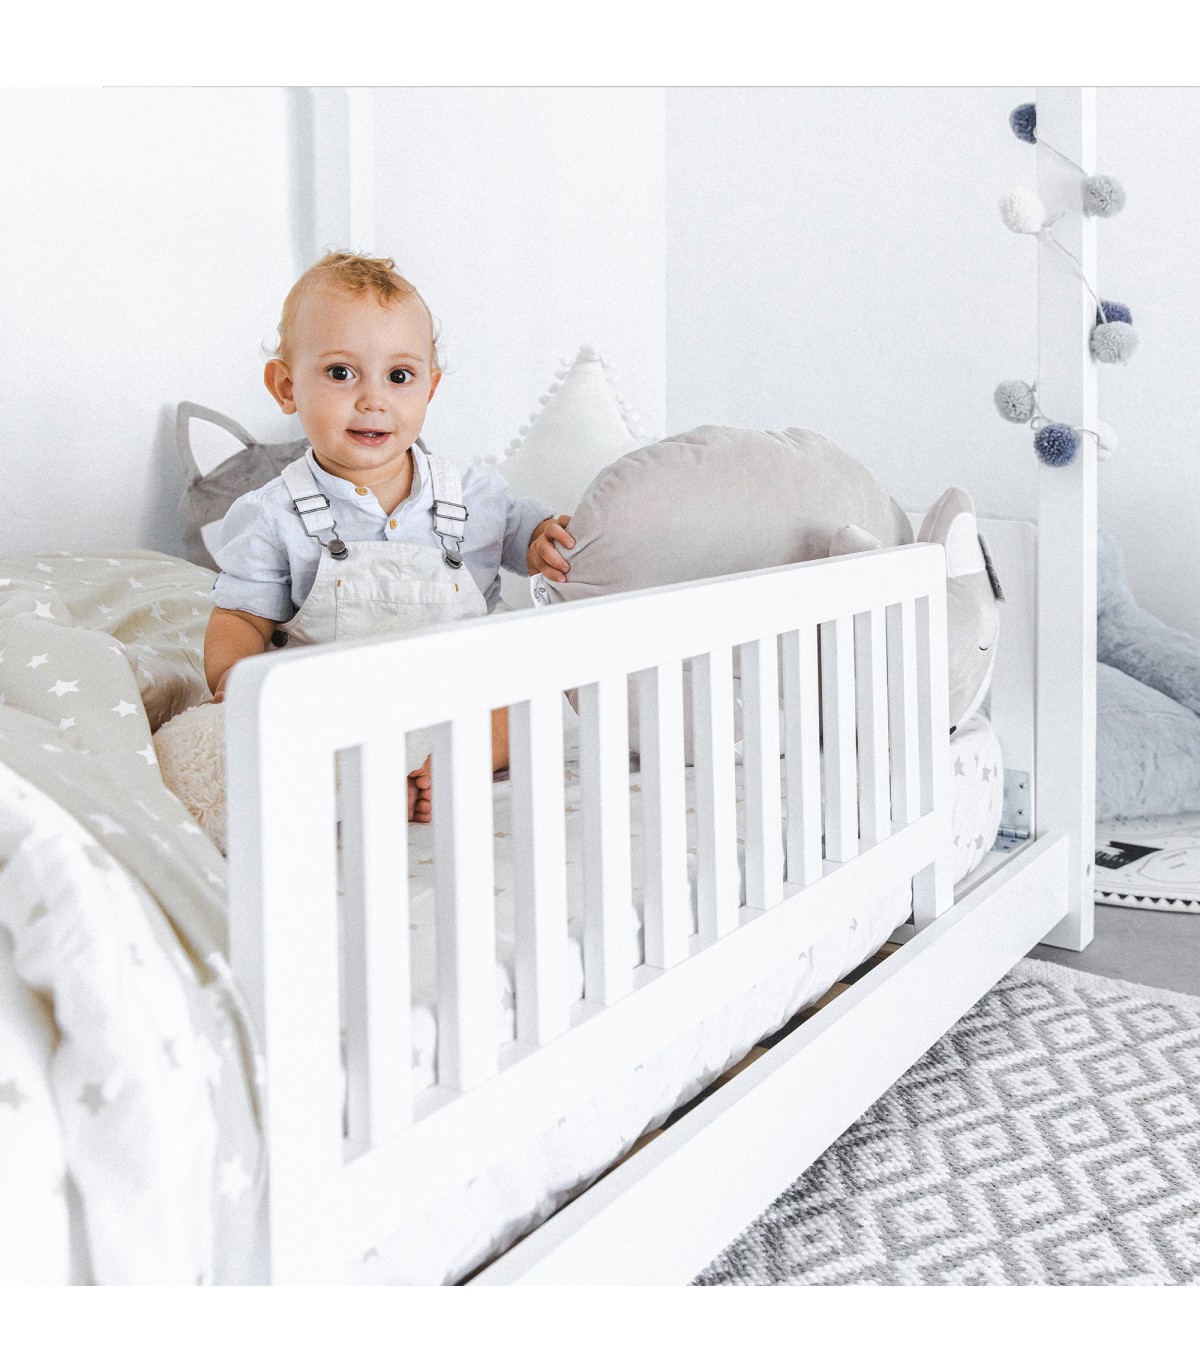 Protection de barre de lit en mousse sûre et confortable pour votre enfant,  citron vert, 14x20x73